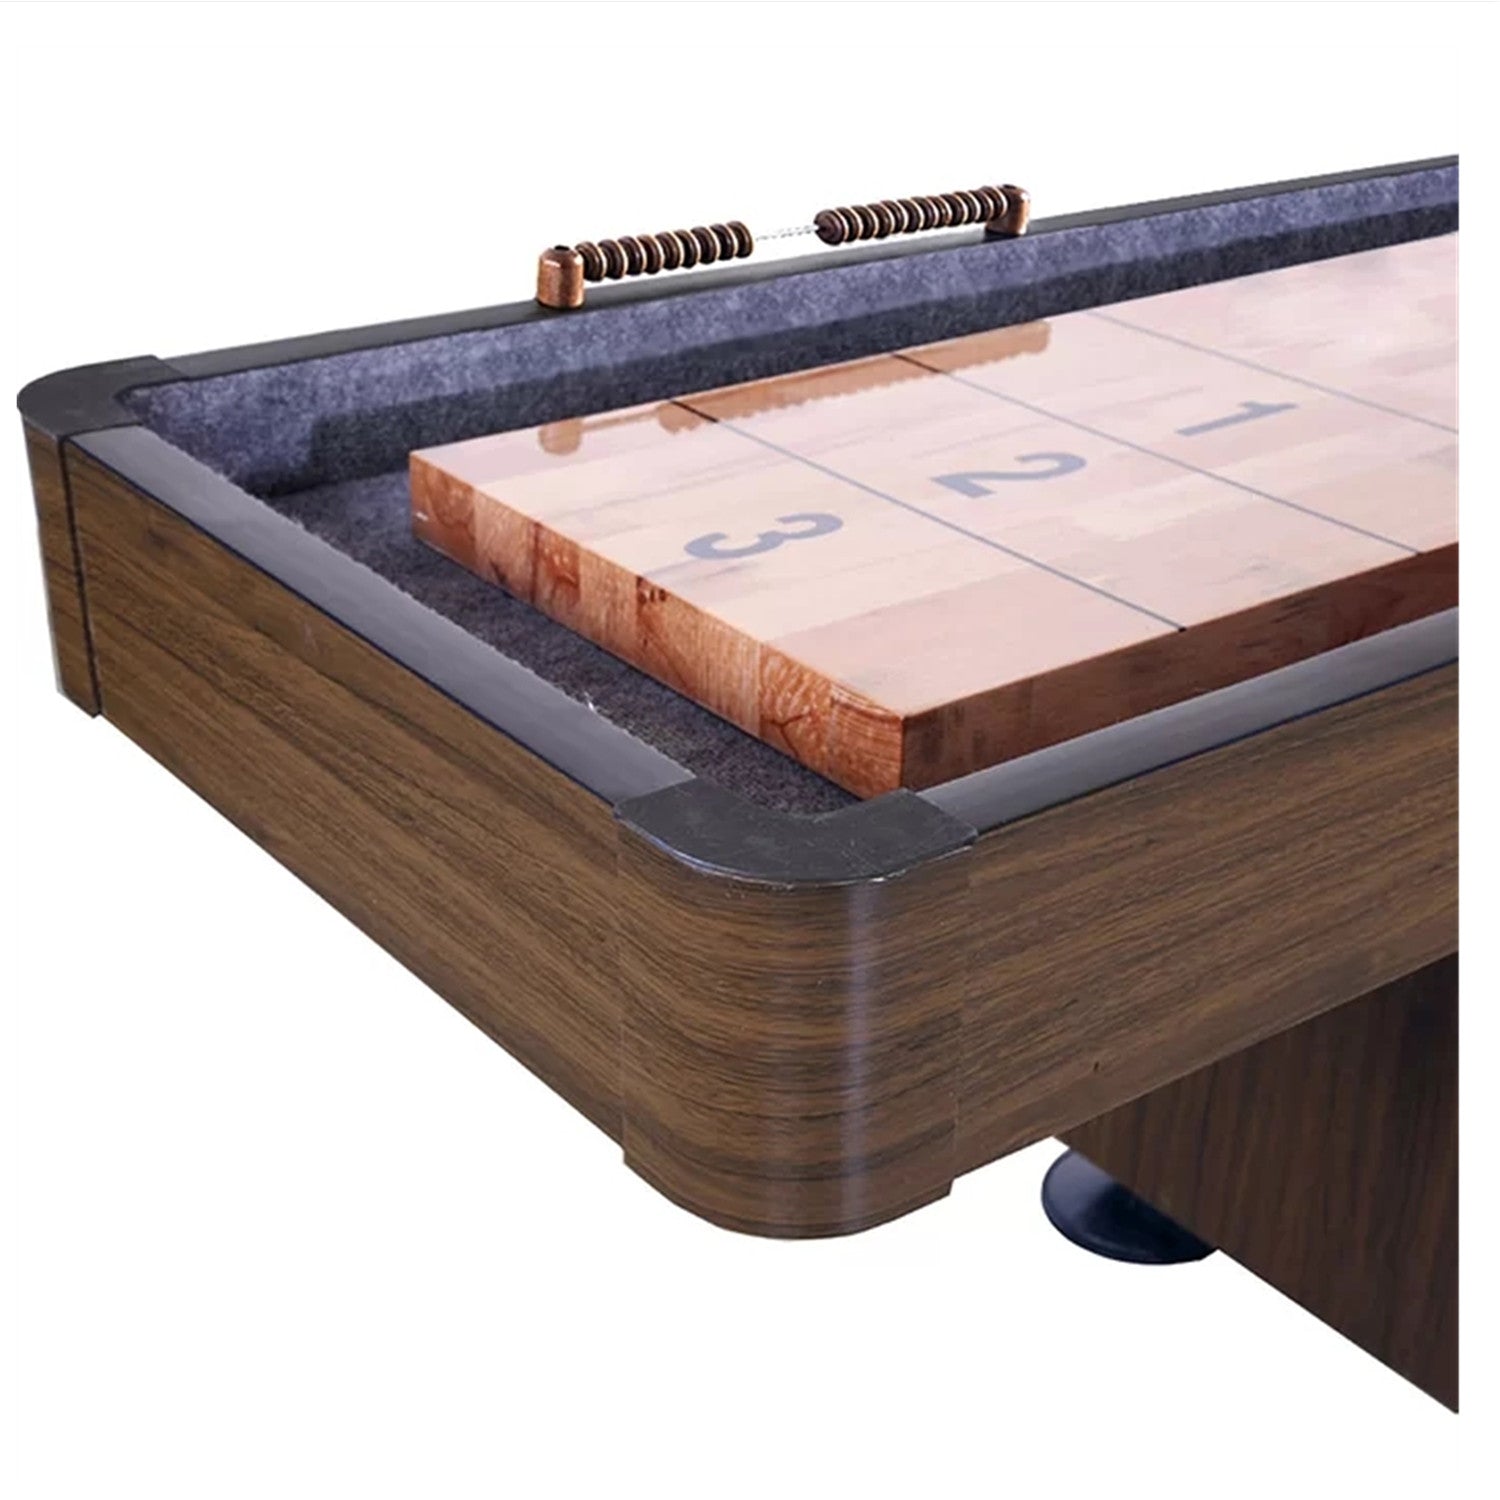 12FT Richmond Shuffleboard Table